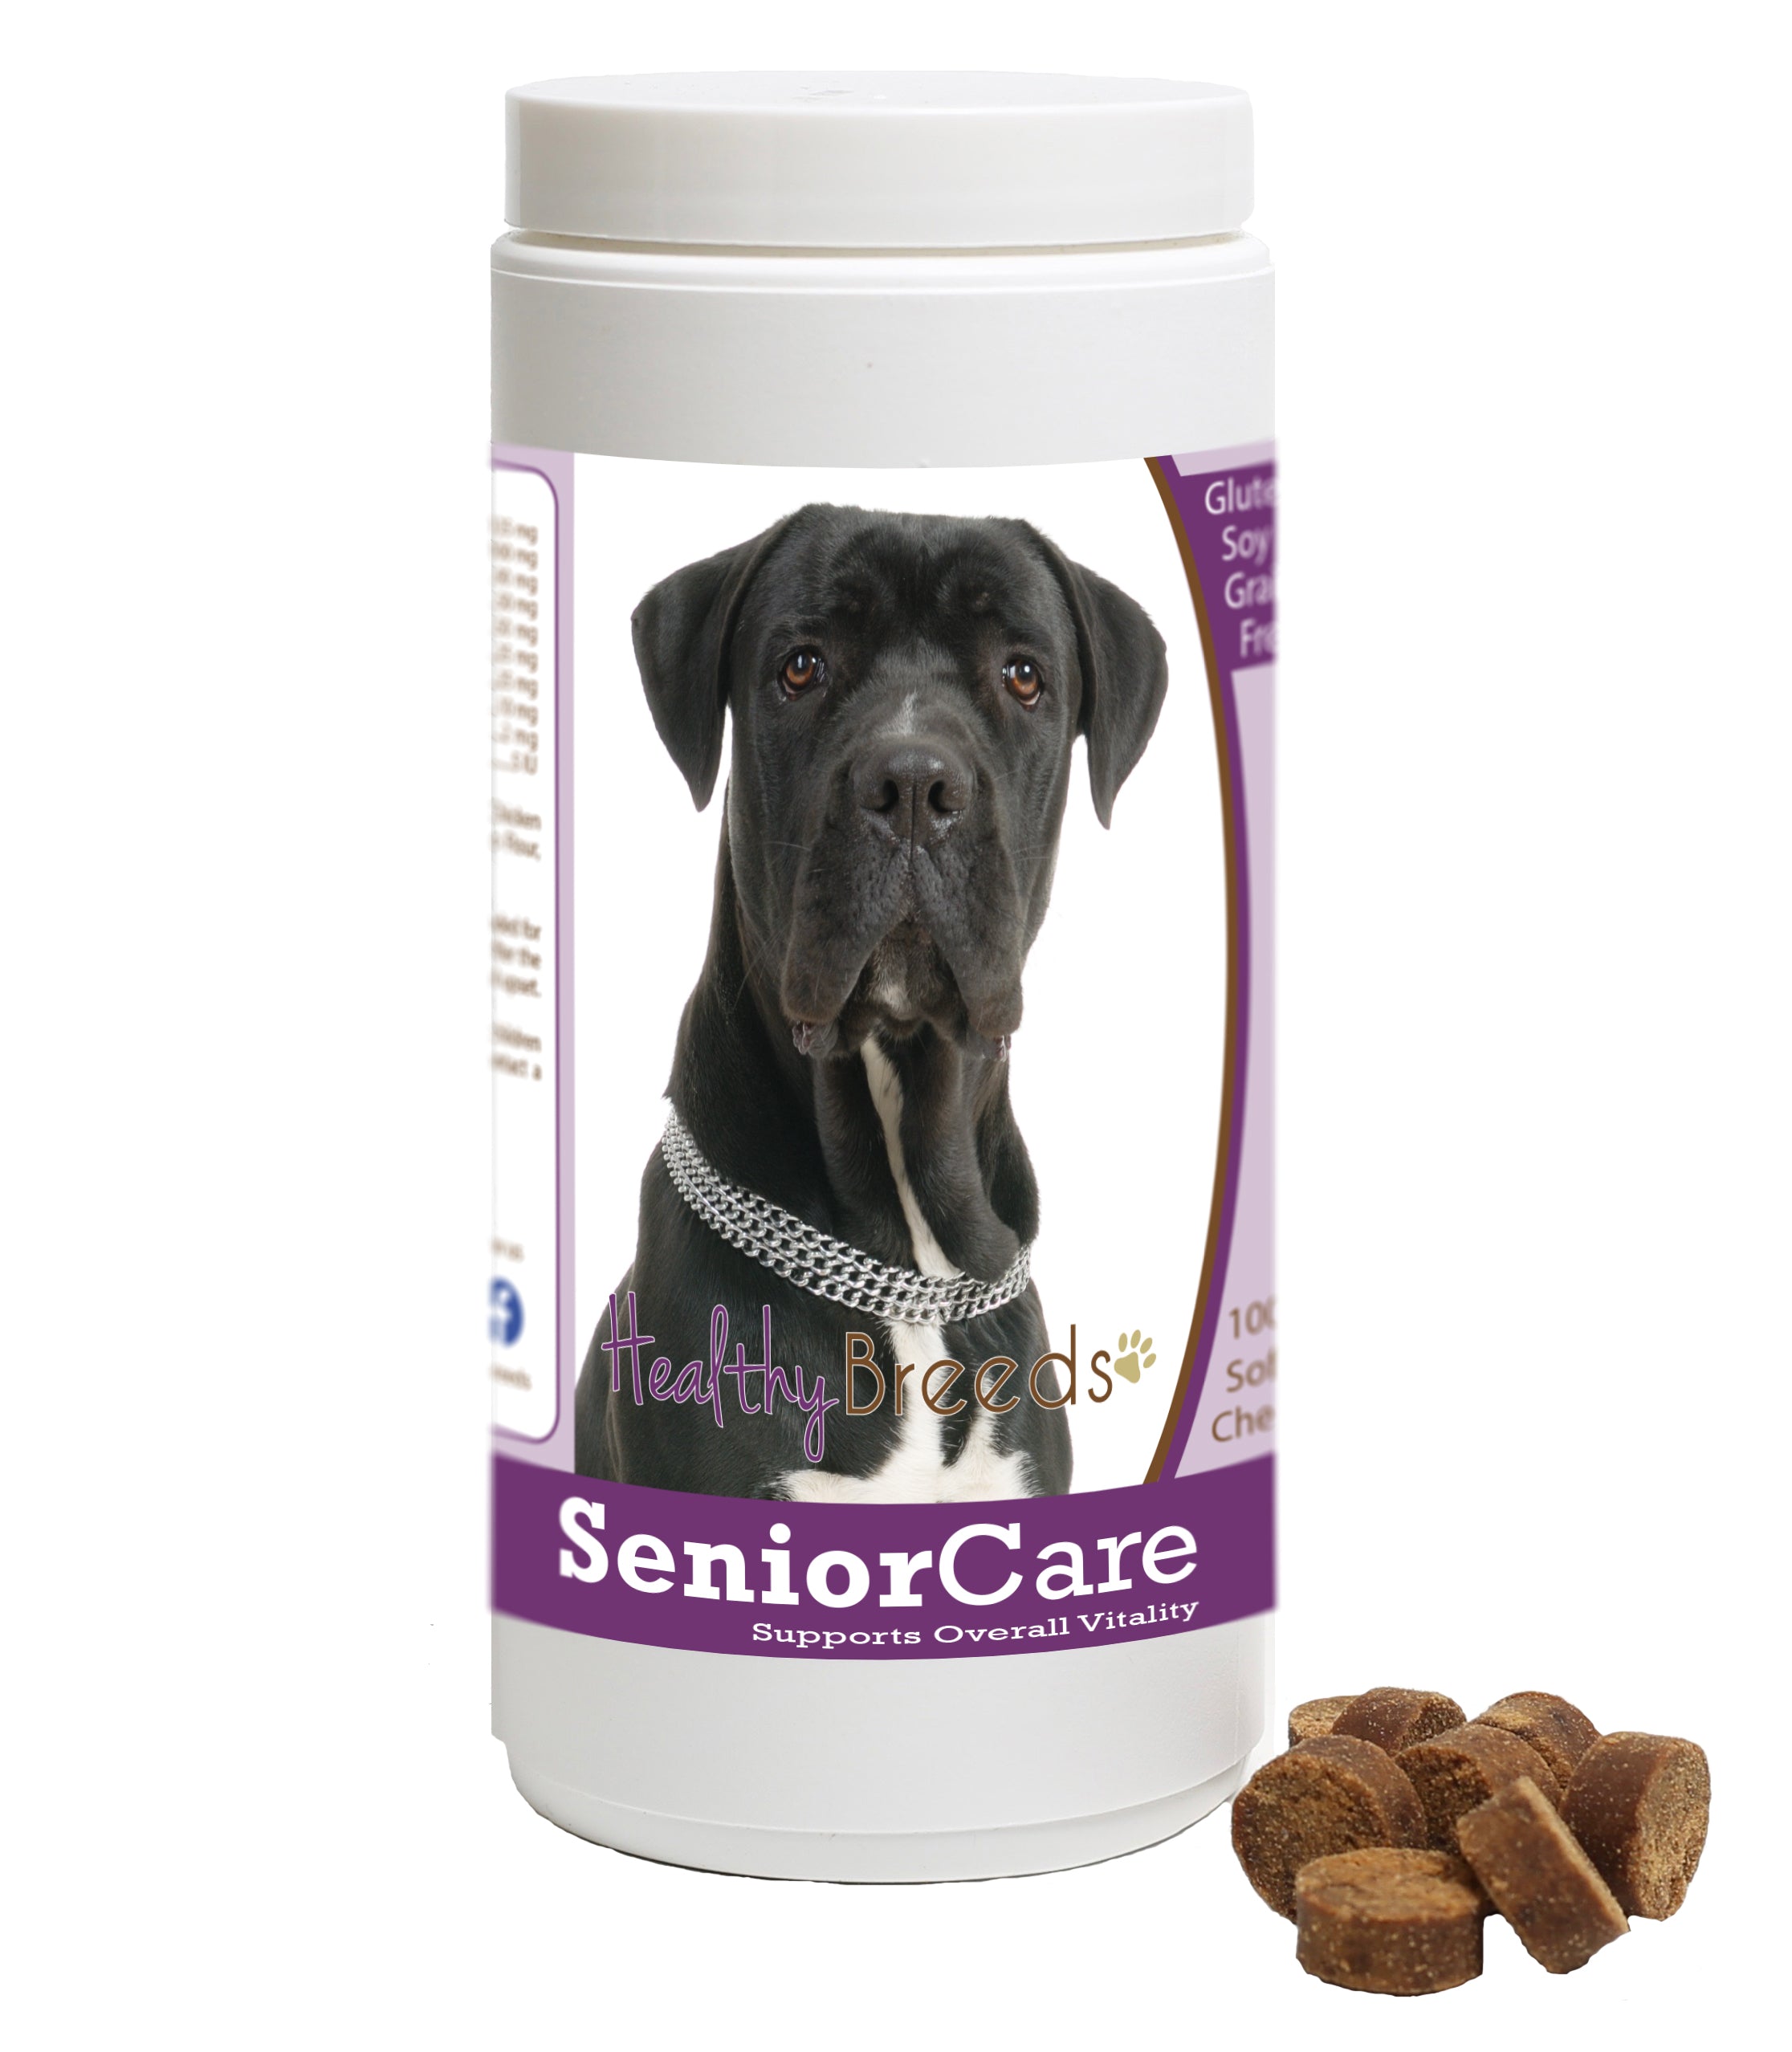 Cane Corso Senior Dog Care Soft Chews 100 Count